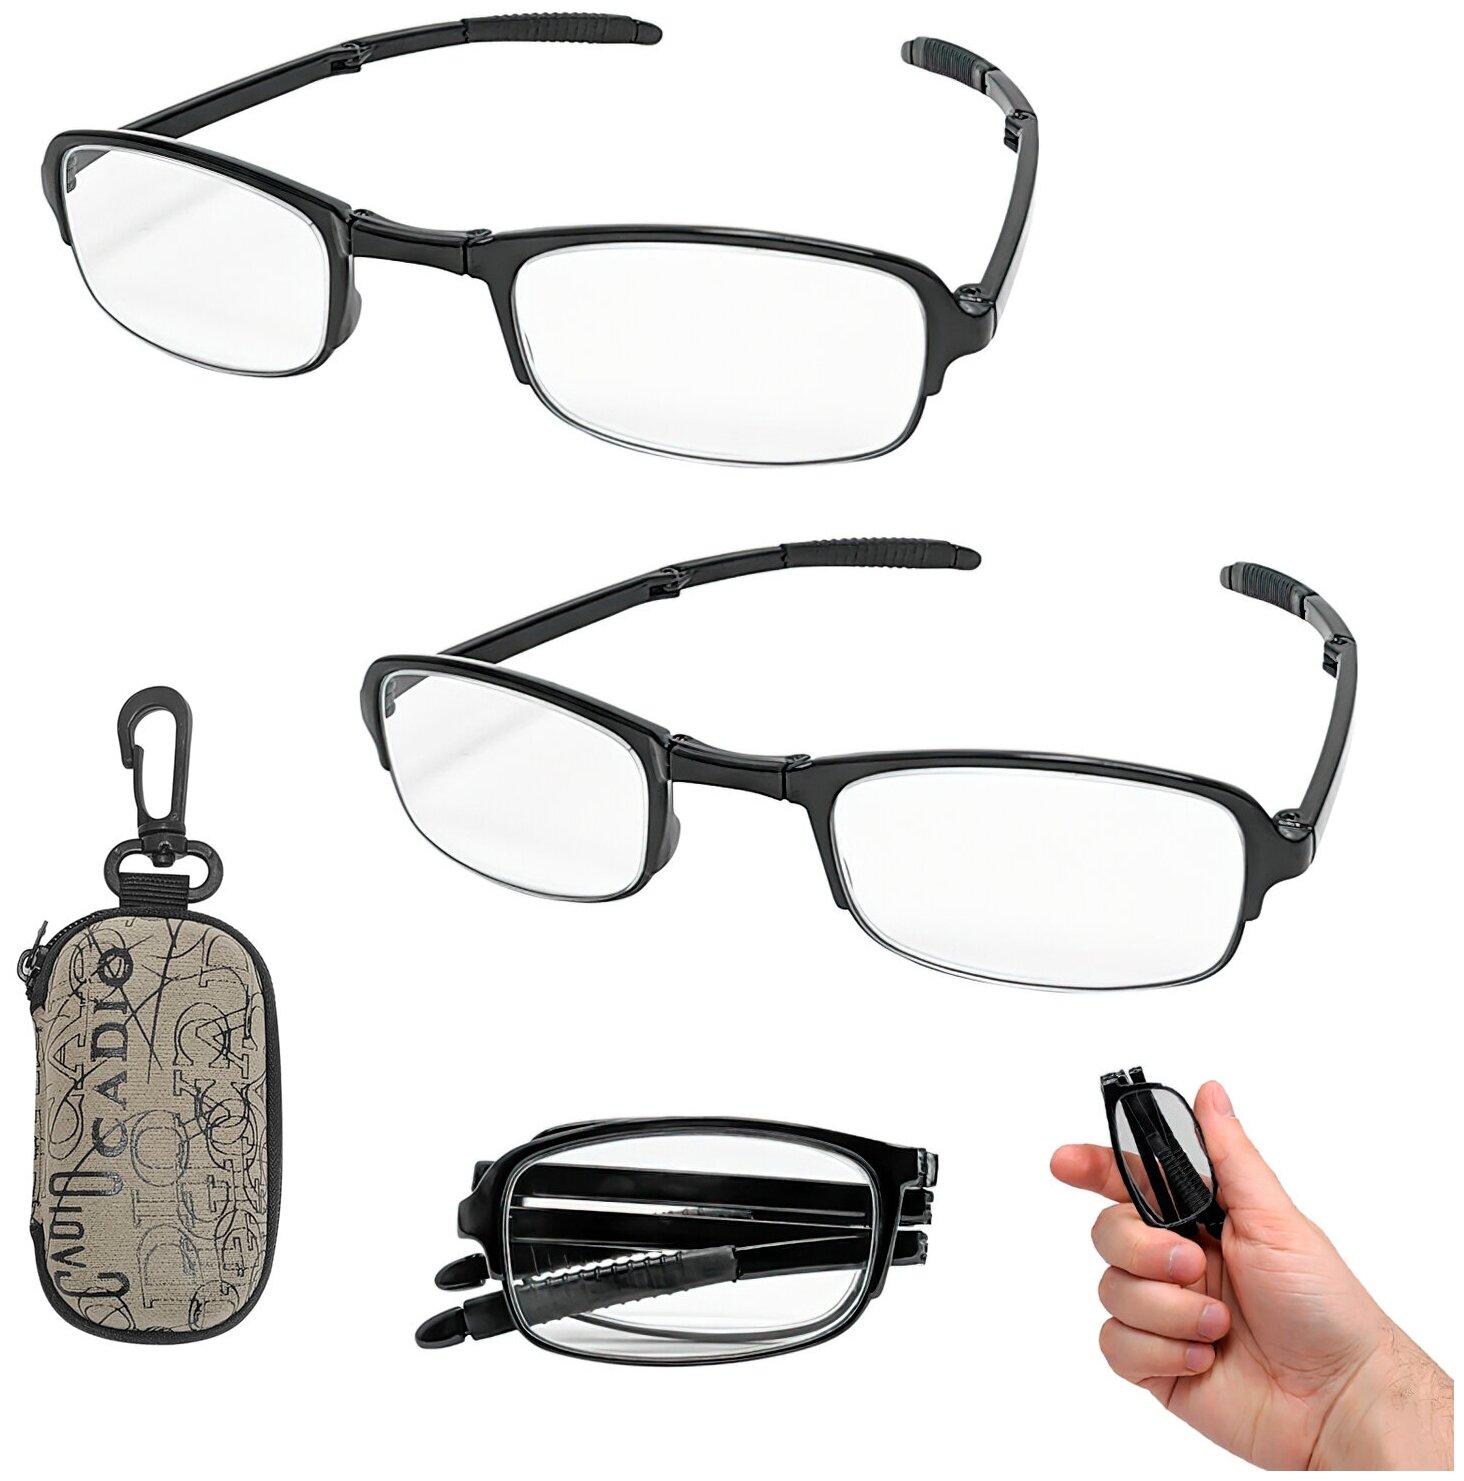 Лупа очки (в комплекте: 2 штуки) фокусировочные увеличительные 1.6х складные с чехлом ПРМТ-102948